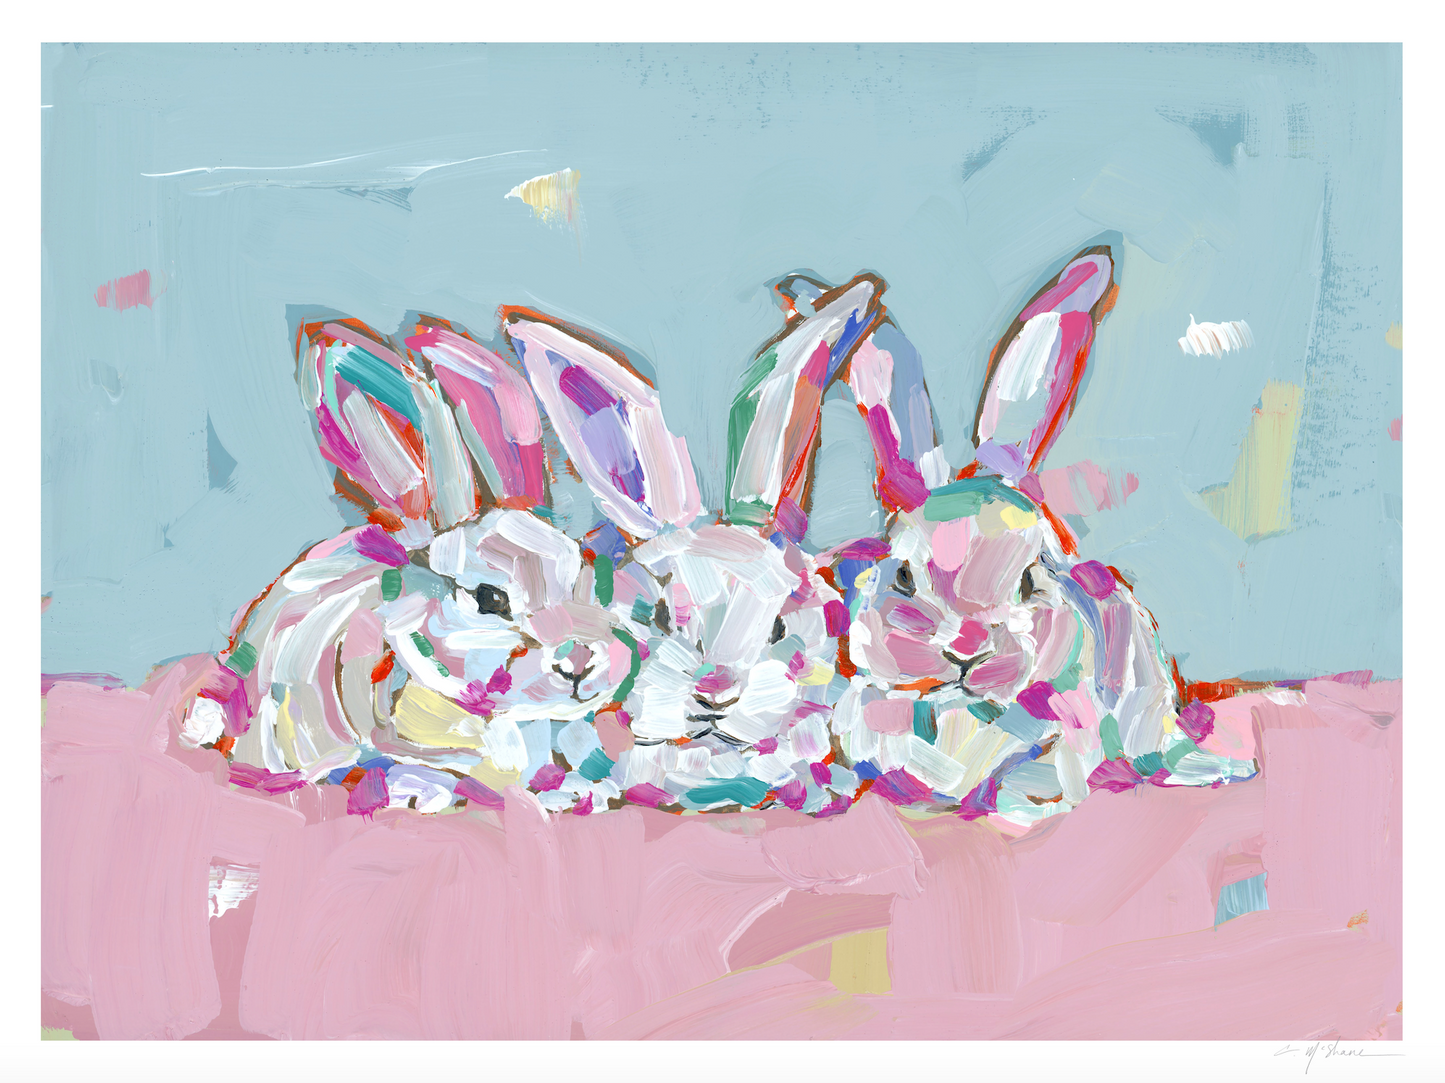 "Hip Hap Hop" bunnies on paper